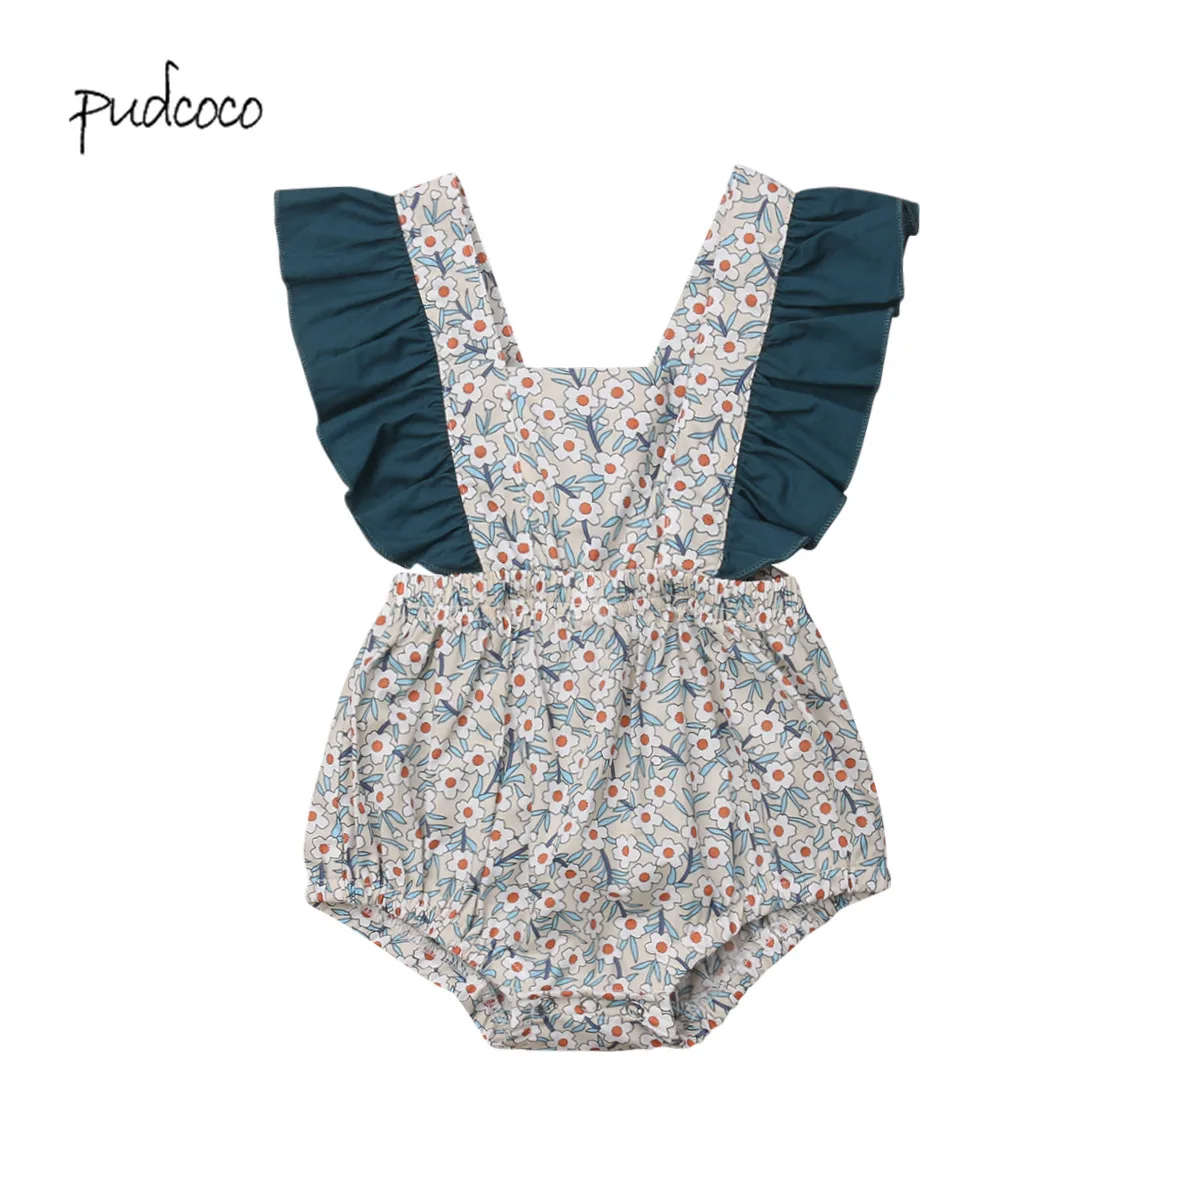 Pudcoco/ брендовый комбинезон с цветочным принтом и оборками для новорожденных девочек, комбинезон, пляжный костюм для детей 0-24 месяцев